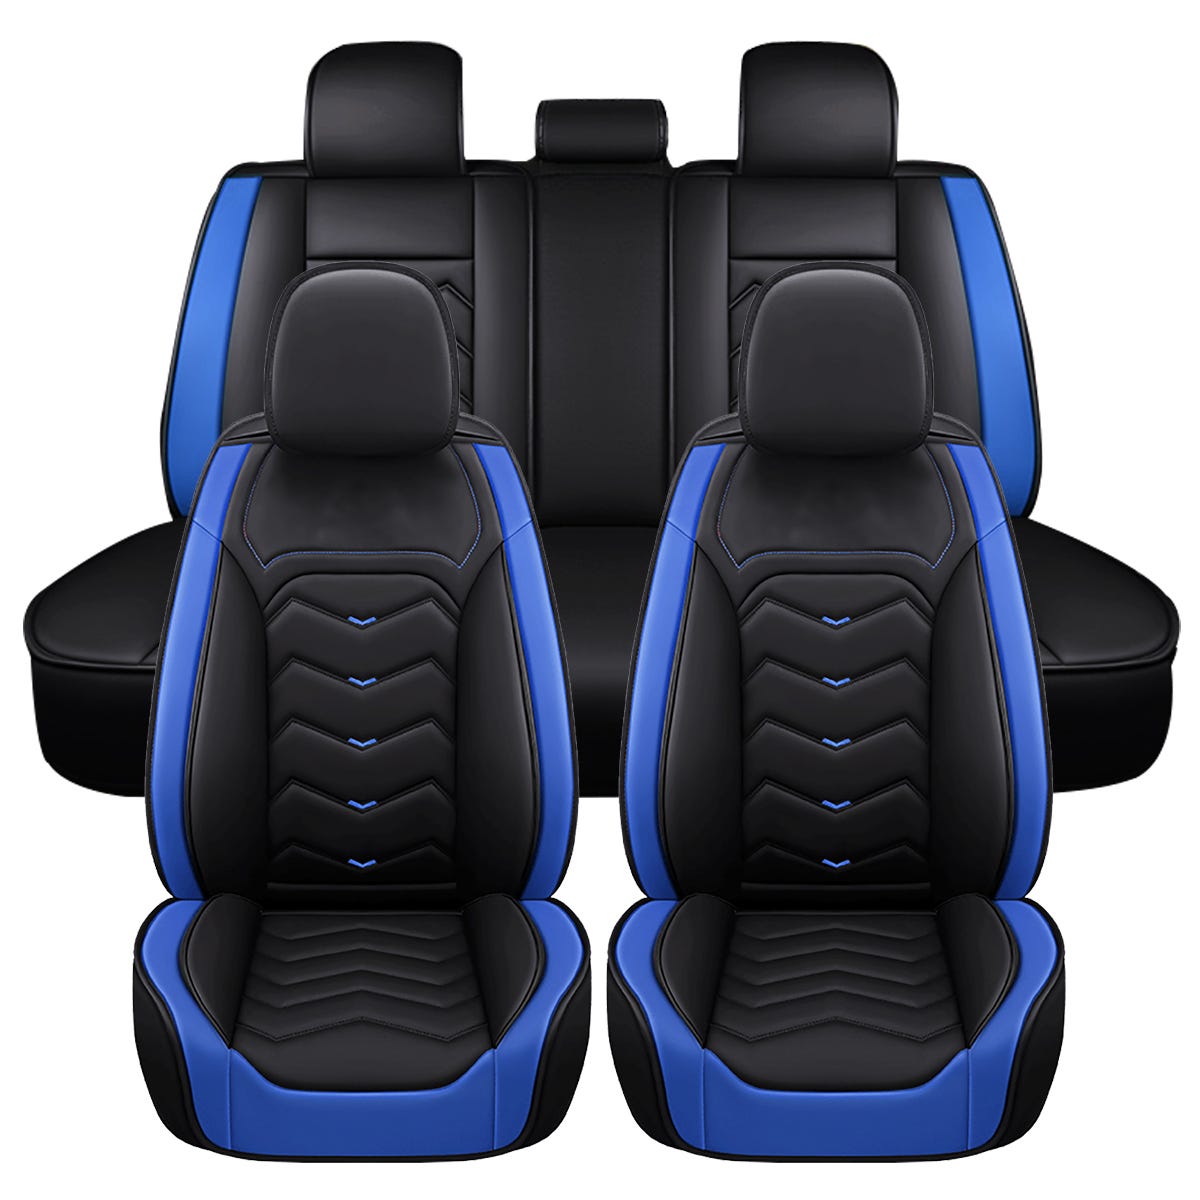 Housses de siège de voiture en cuir PU Universelles 5 Sièges - Noir + bleu